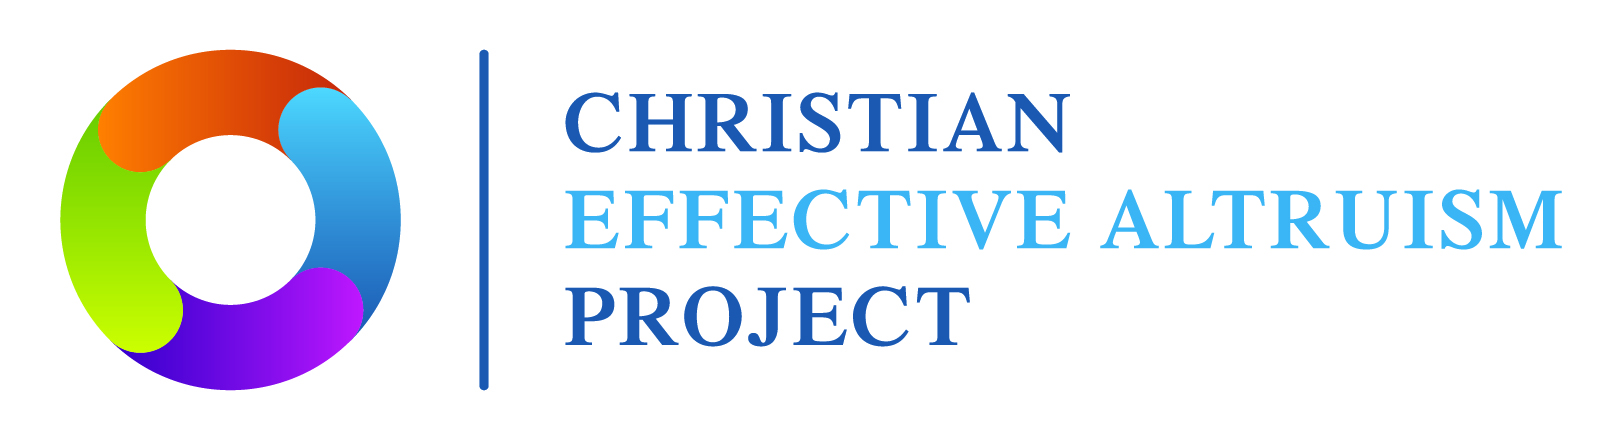 Christian Effective Altruism Society | CEAS Logo